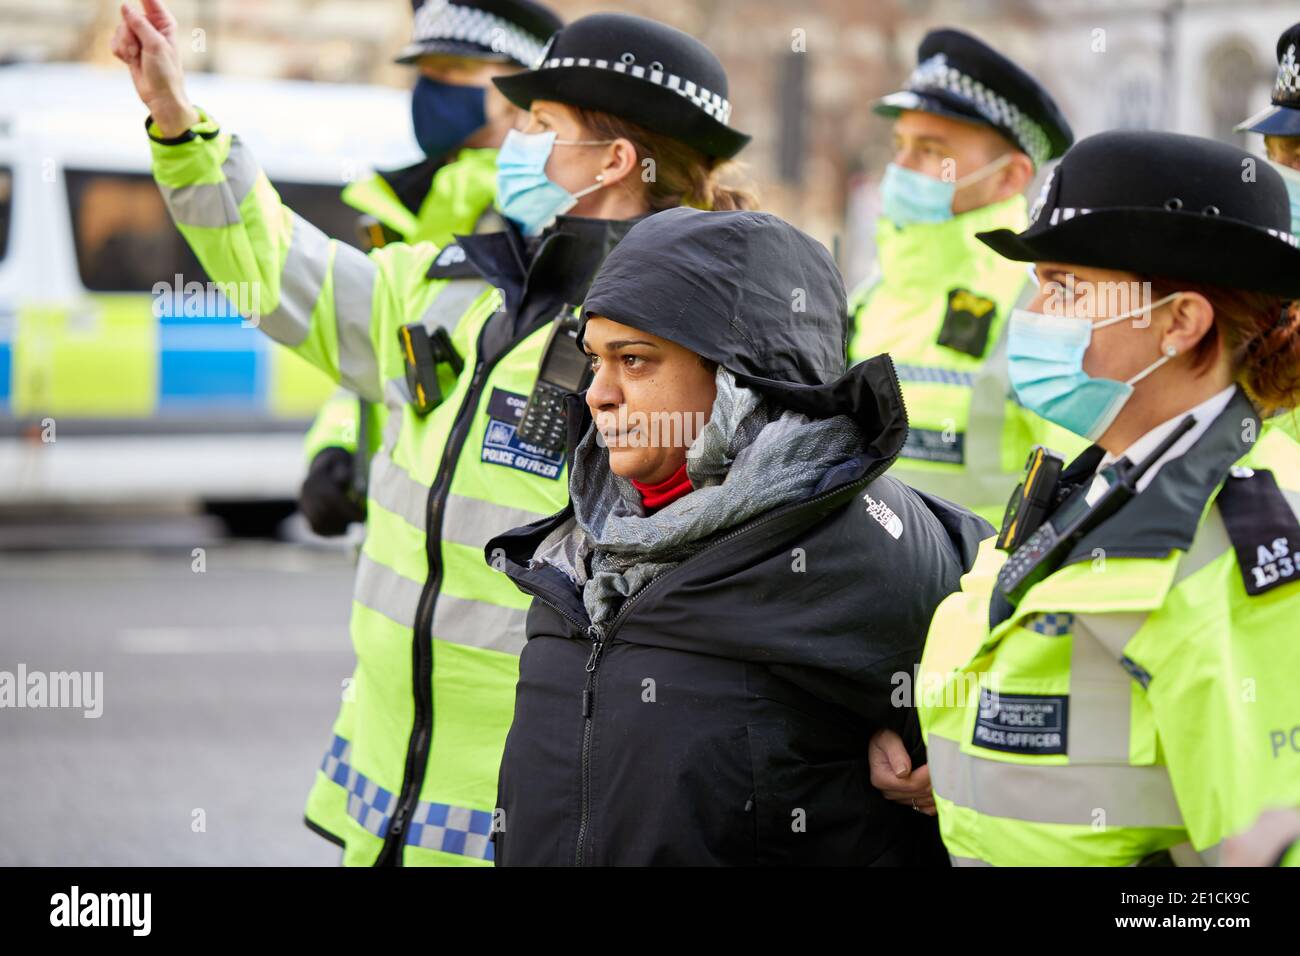 Londres, Royaume-Uni. - 6 janvier 2021 : un manifestant anti-verrouillage est arrêté alors qu'il assistait à une manifestation sur la place du Parlement contre d'autres mesures de pandémie du coronavirus gouvernemental. Banque D'Images